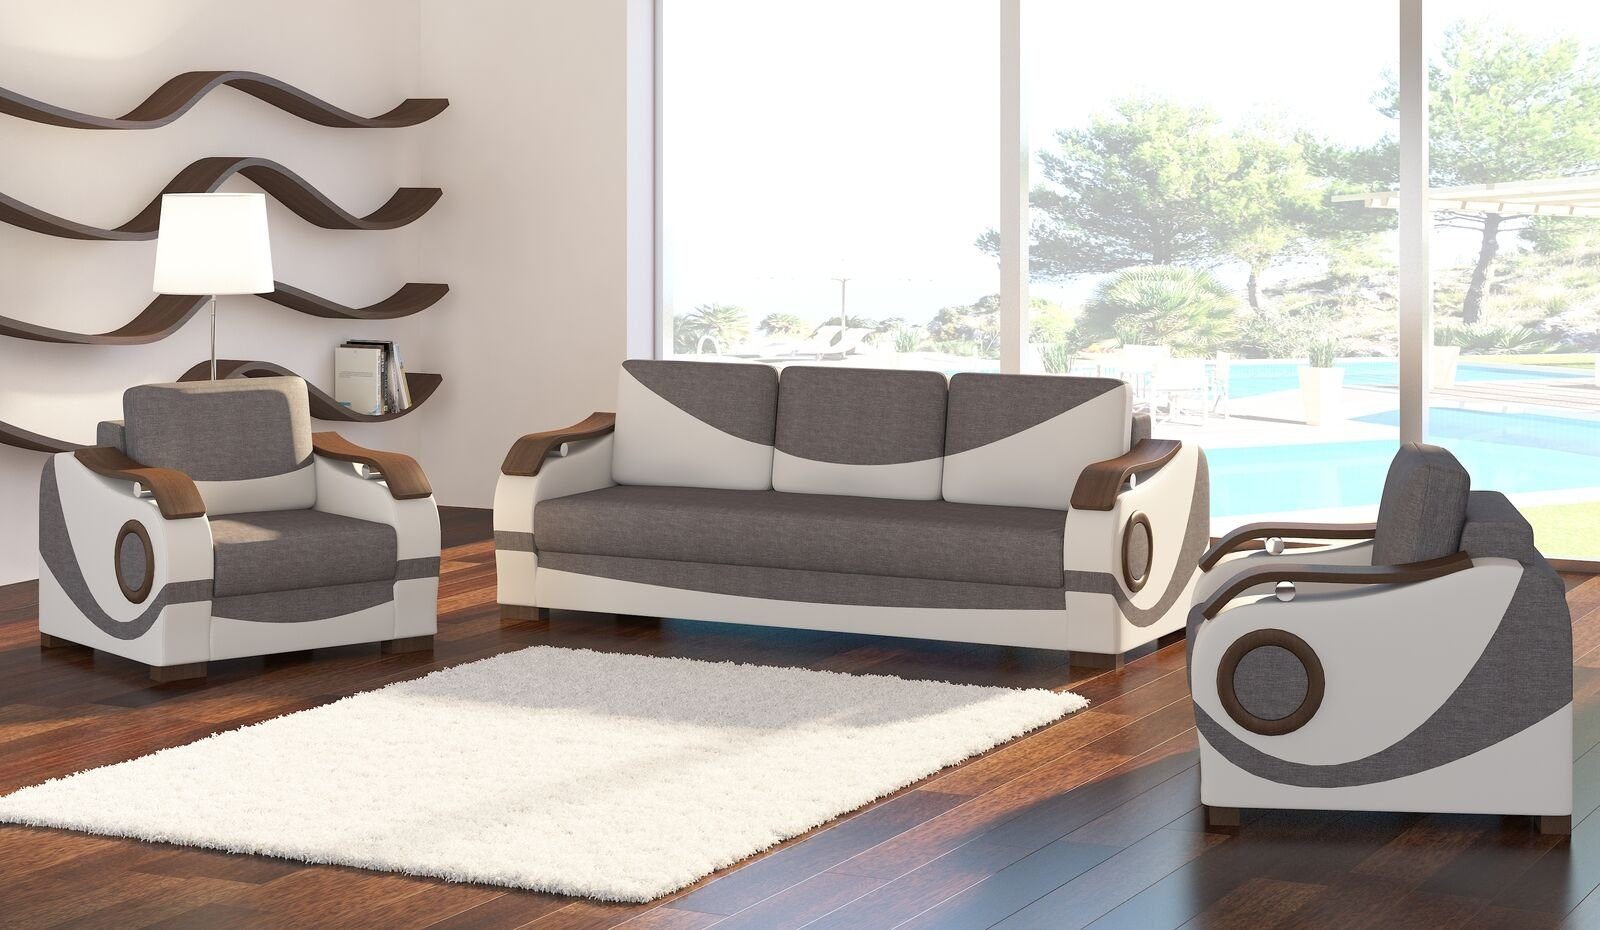 JVmoebel Sofa Sofagarnitur Puerto 3+1+1 mit Bettfunktion Set Couch Polster Sofas, Made in Europe Weiß/Grau